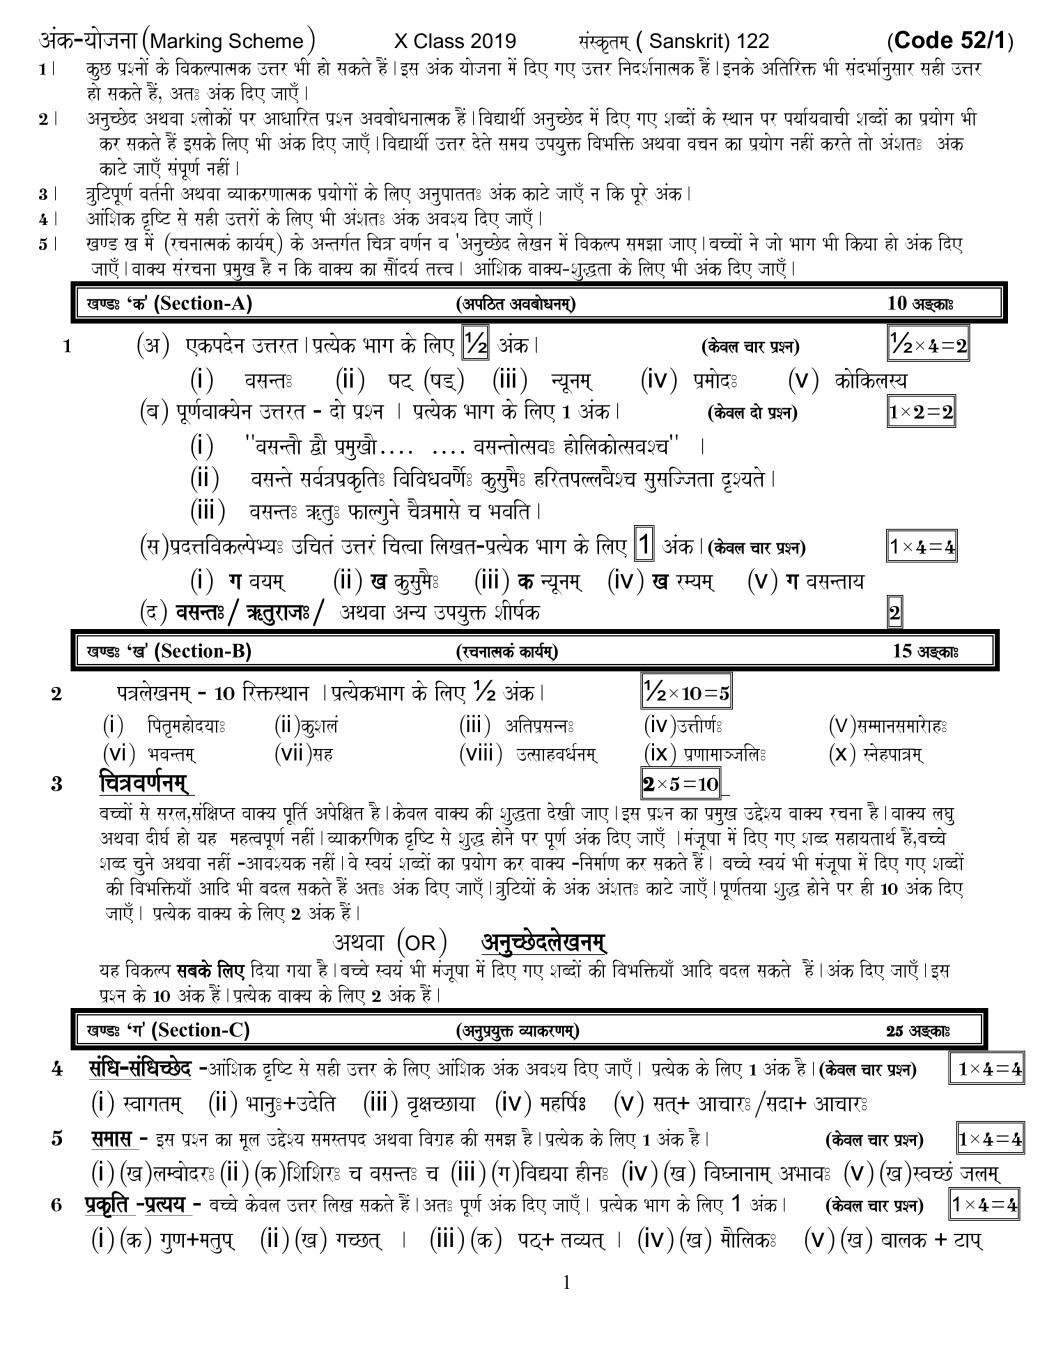 CBSE Class 10 Sanskrit Question Paper 2019 set 52-1 Solutions - Page 1